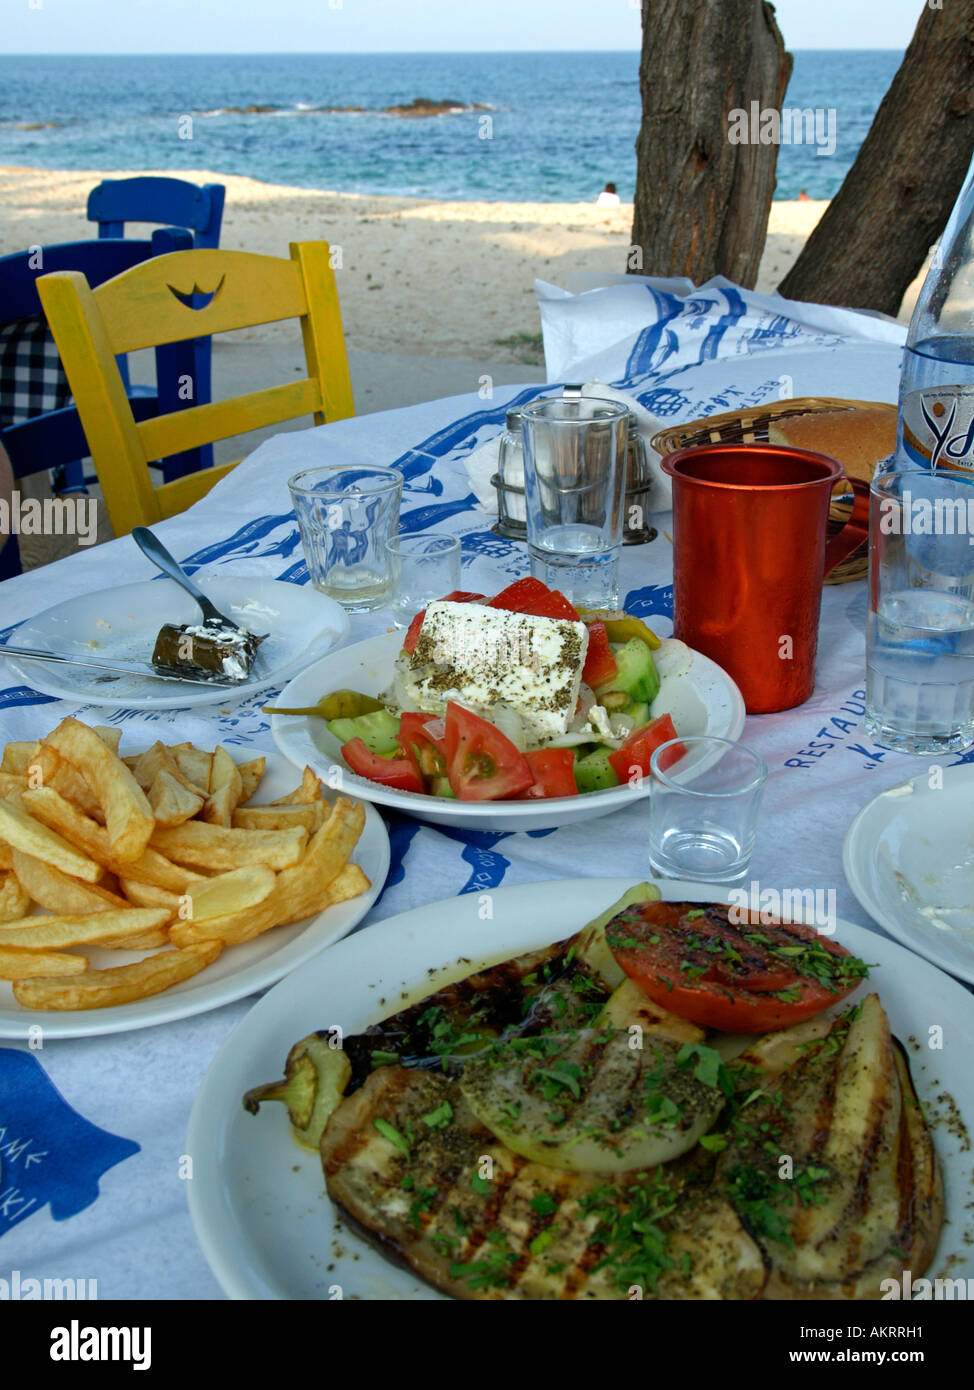 Comida típica griega ensalada griega verduras grilladas berenjenas berenjena calabacín cougette tomates cebollas patatas fritas en olive Foto de stock